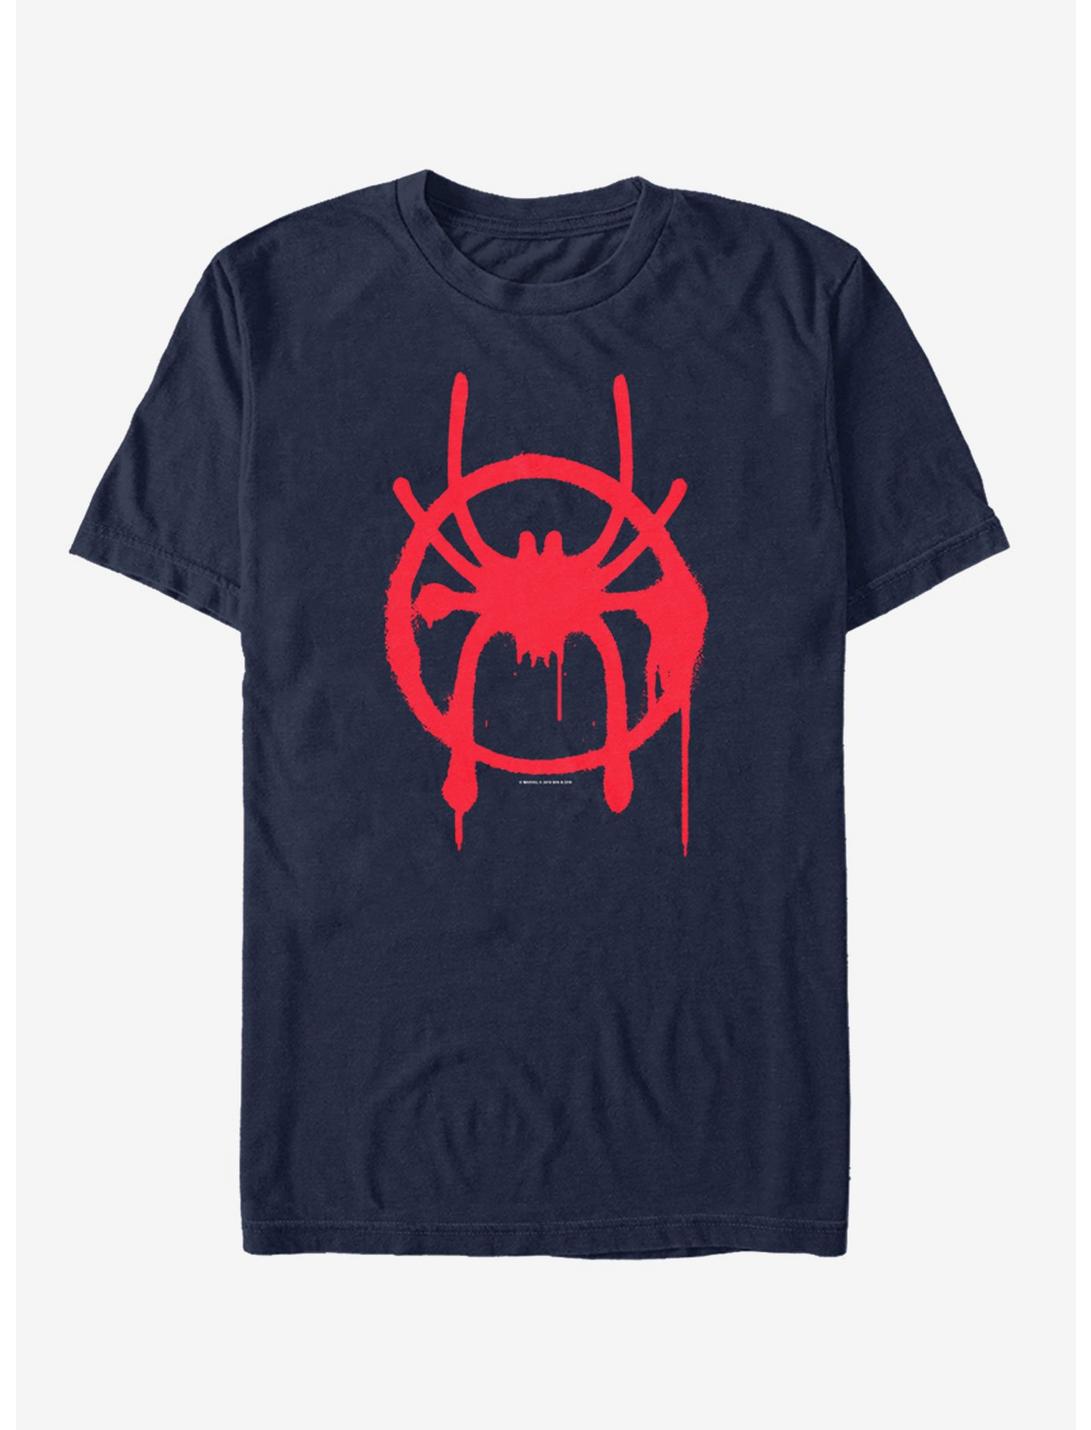 Marvel Spider-Man Spider-Verse Miles Symbol Navy T-Shirt, NAVY, hi-res